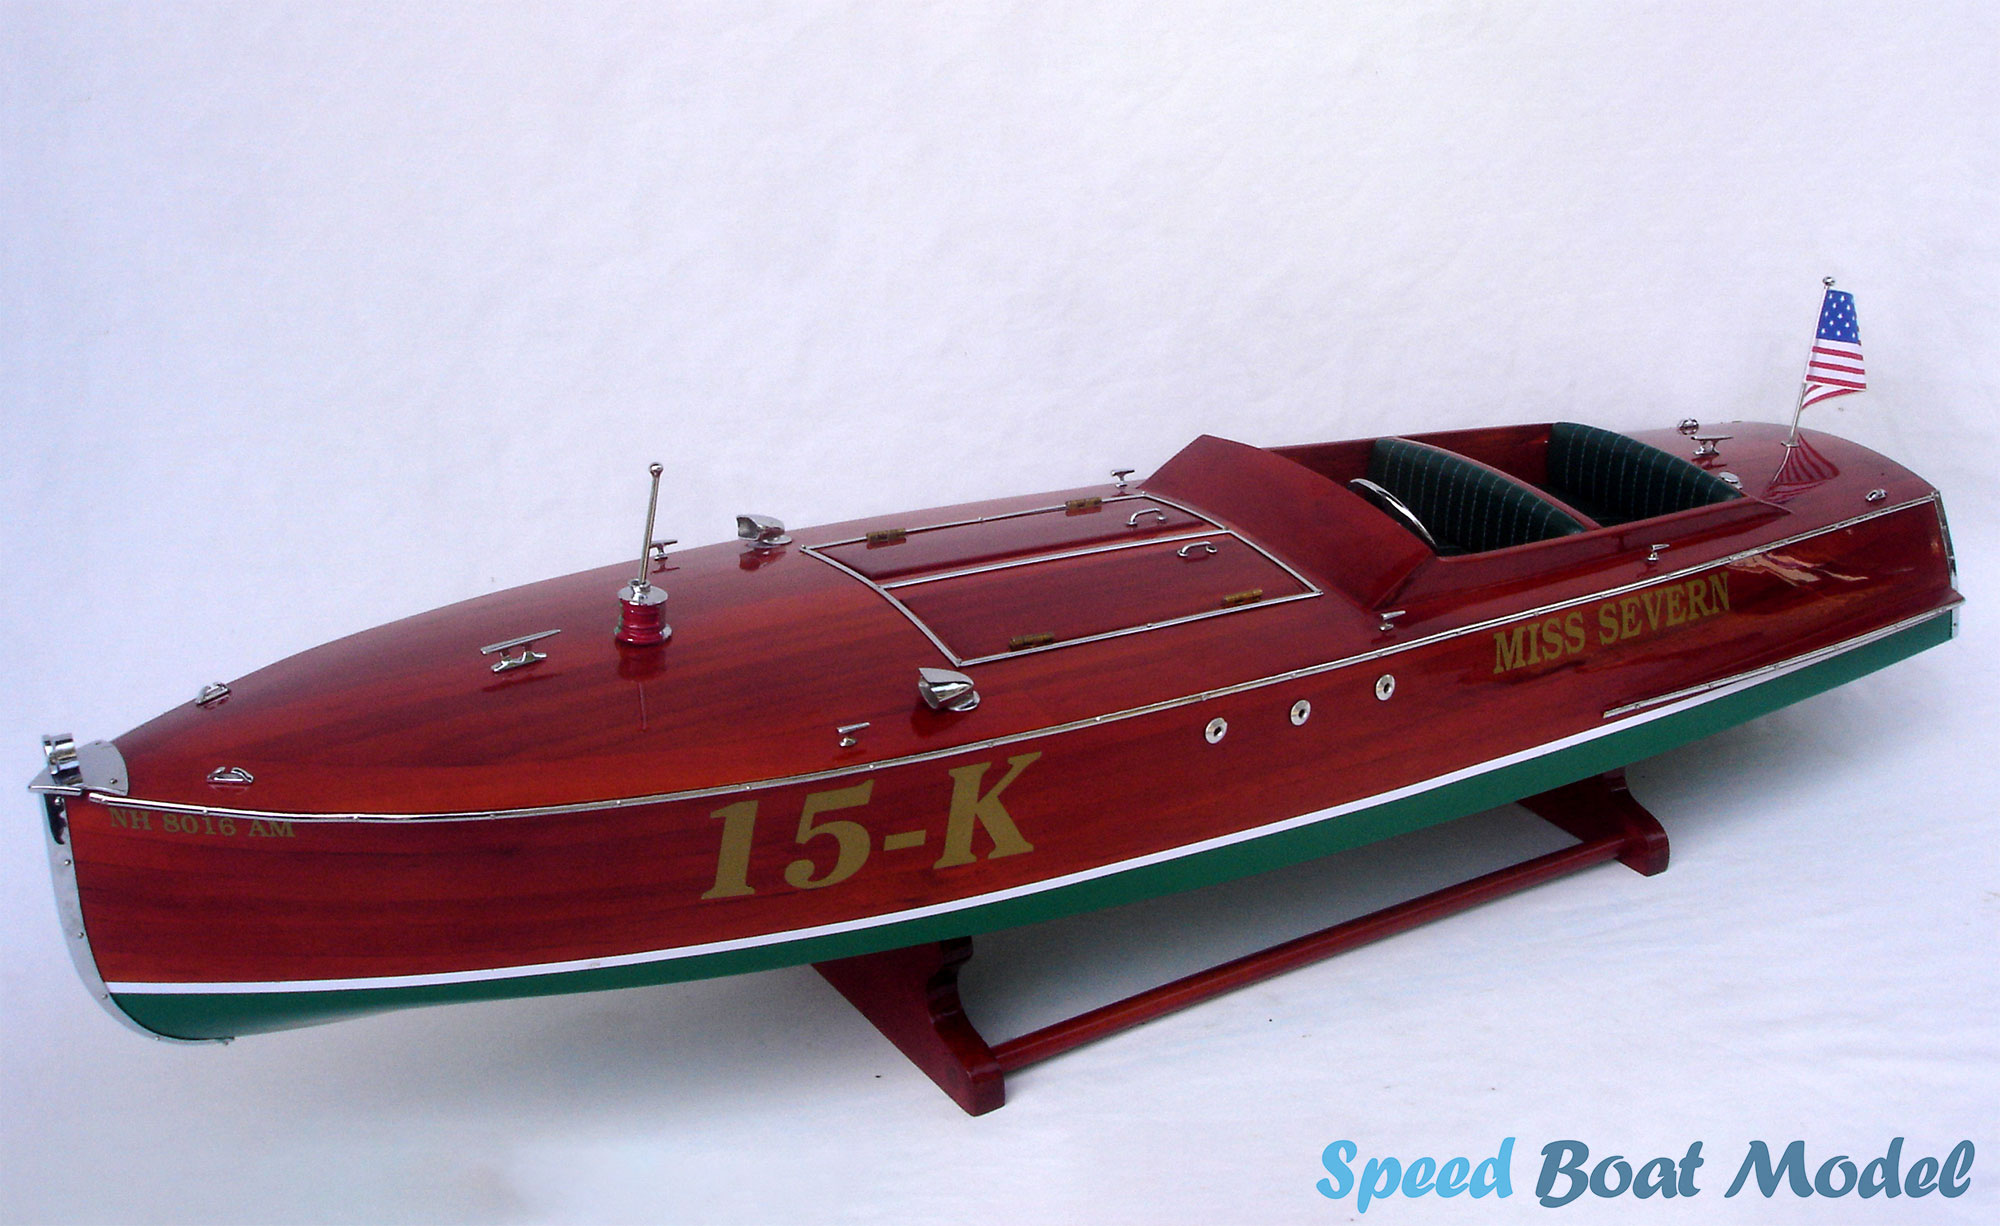 Miss Severn Speed Boat Model 31.5 - Wooden Boat Model